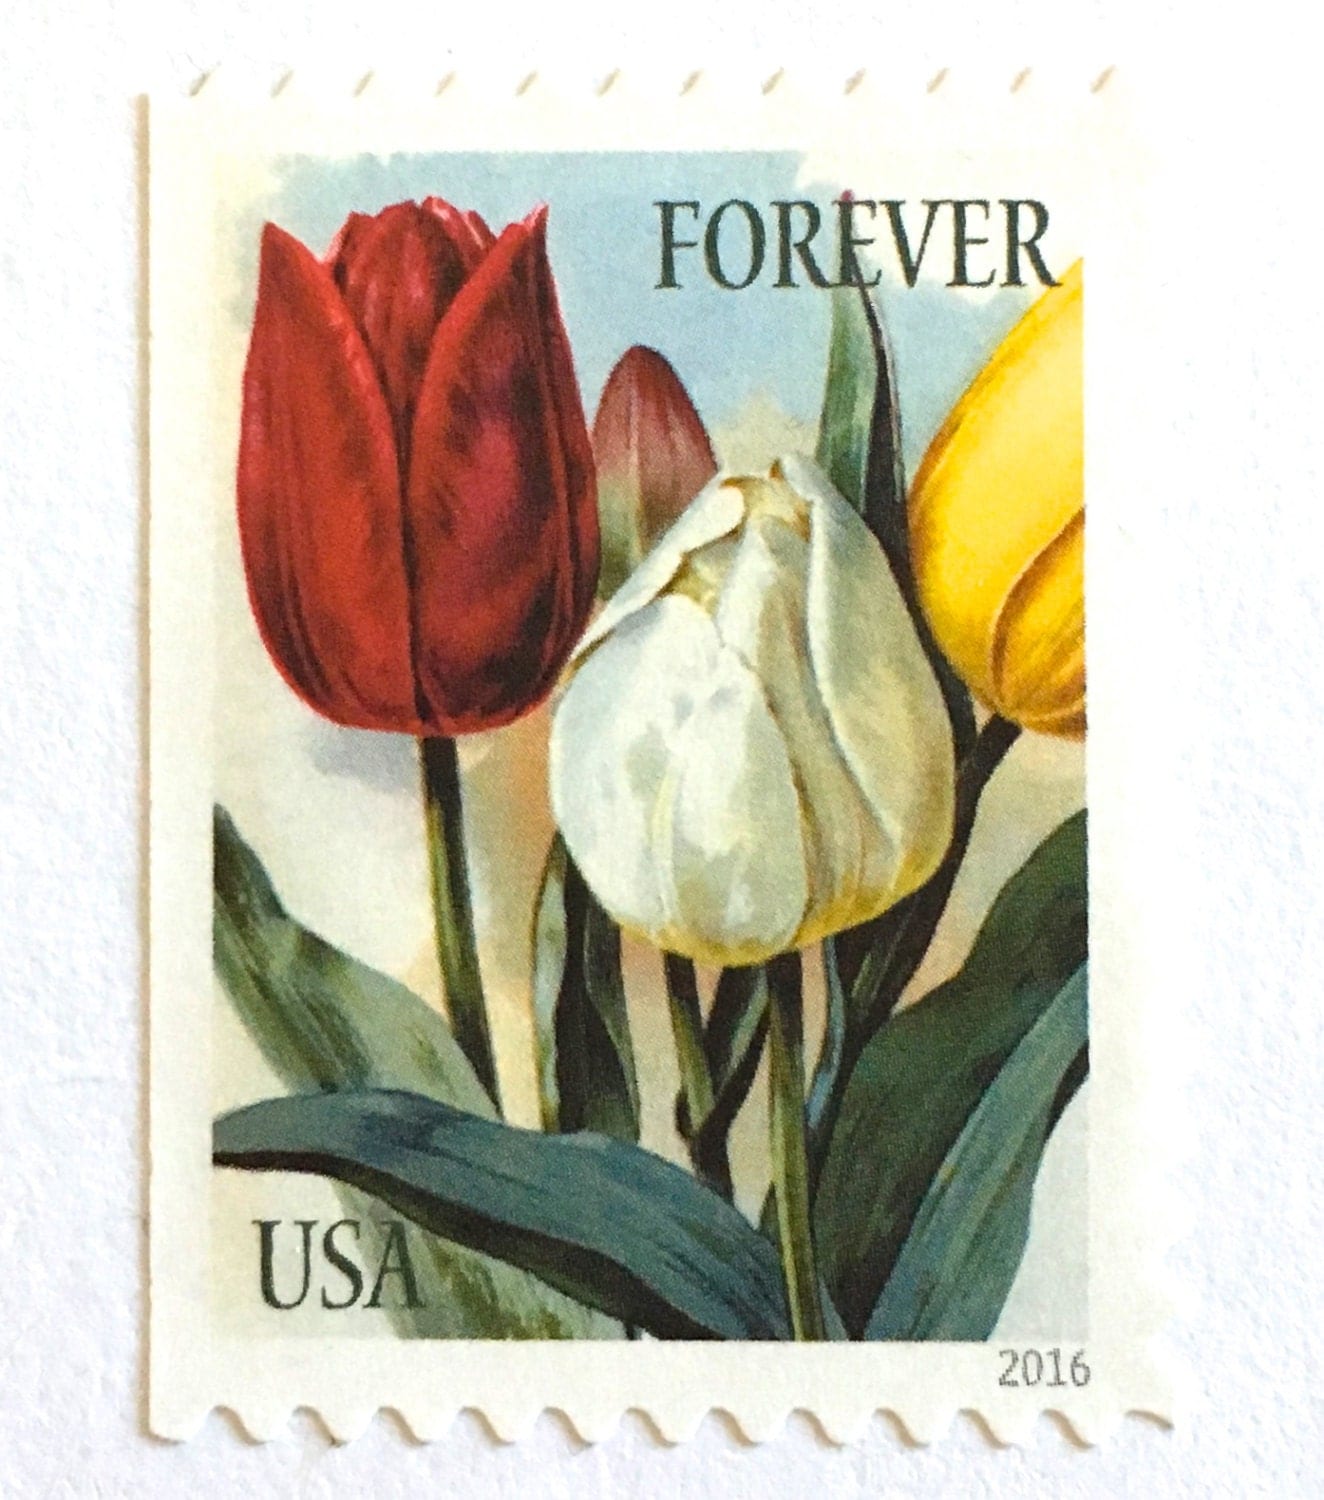 10 Forever Tulip Stamps // Unused Vintage Print Tulips Postage